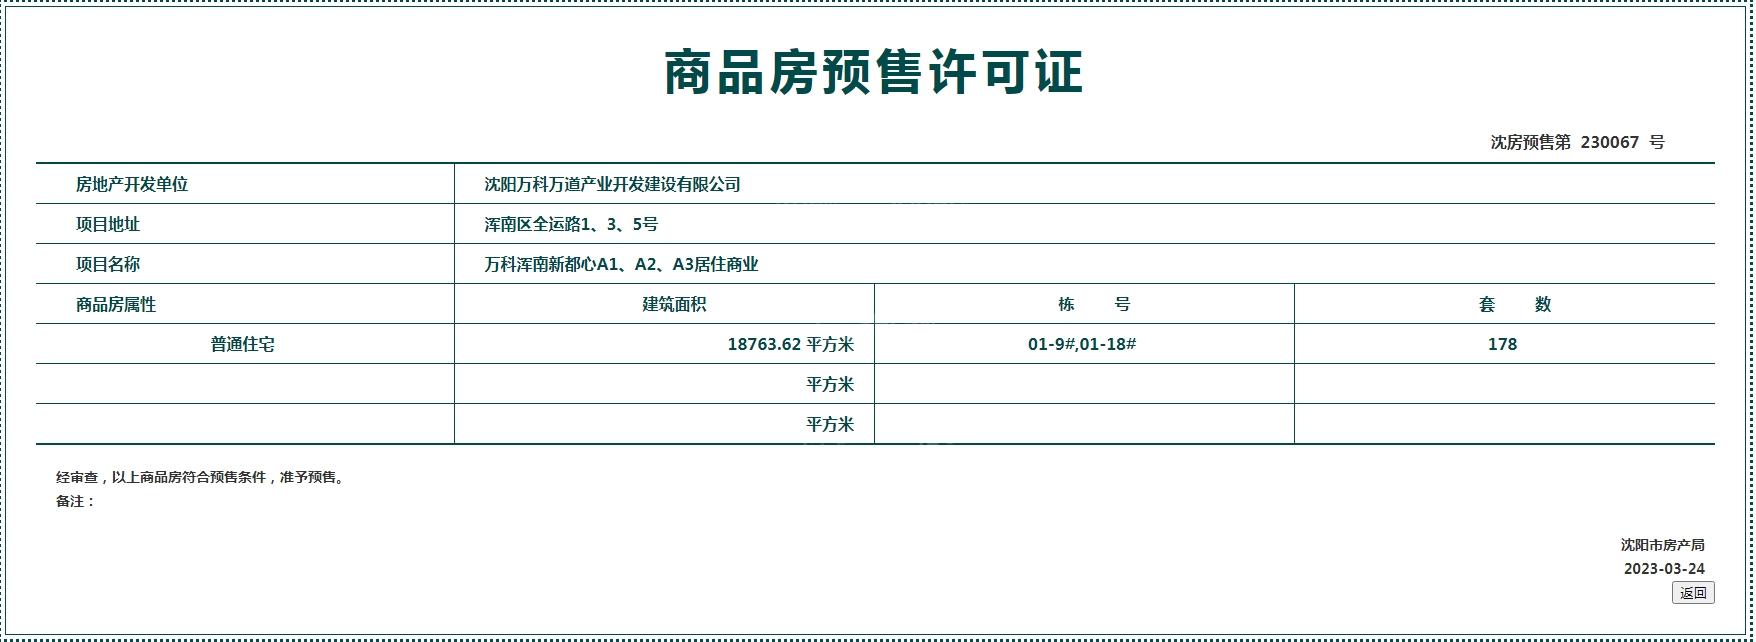 万科浑南新都心项目3月取得最新预售证